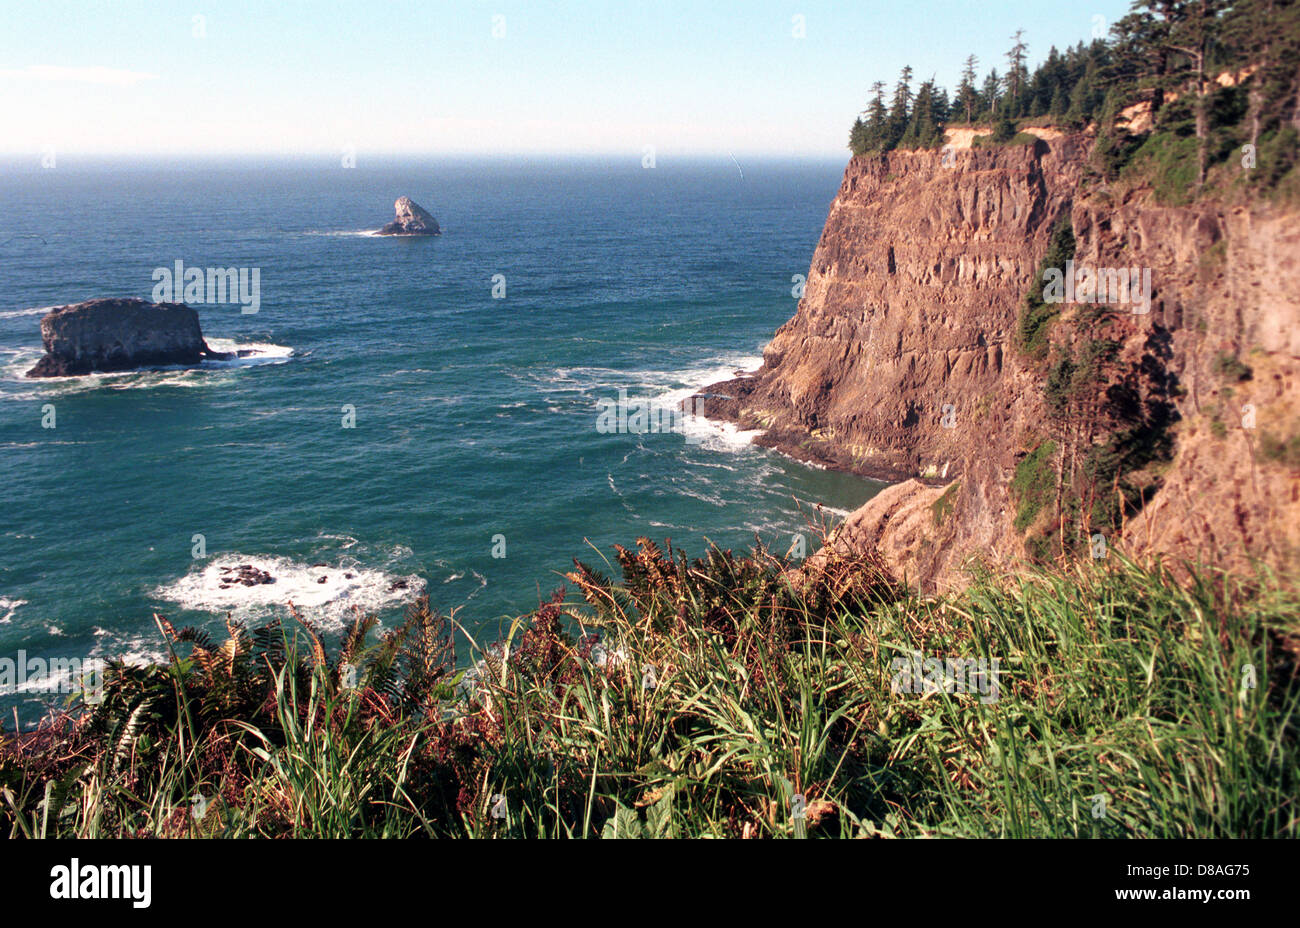 El Océano Pacífico en la costa de Oregon Oregon, Oregon Coast corre de norte a sur a lo largo de escarpadas, Océano Pacífico océano,olas,playa,shore, surf, Foto de stock